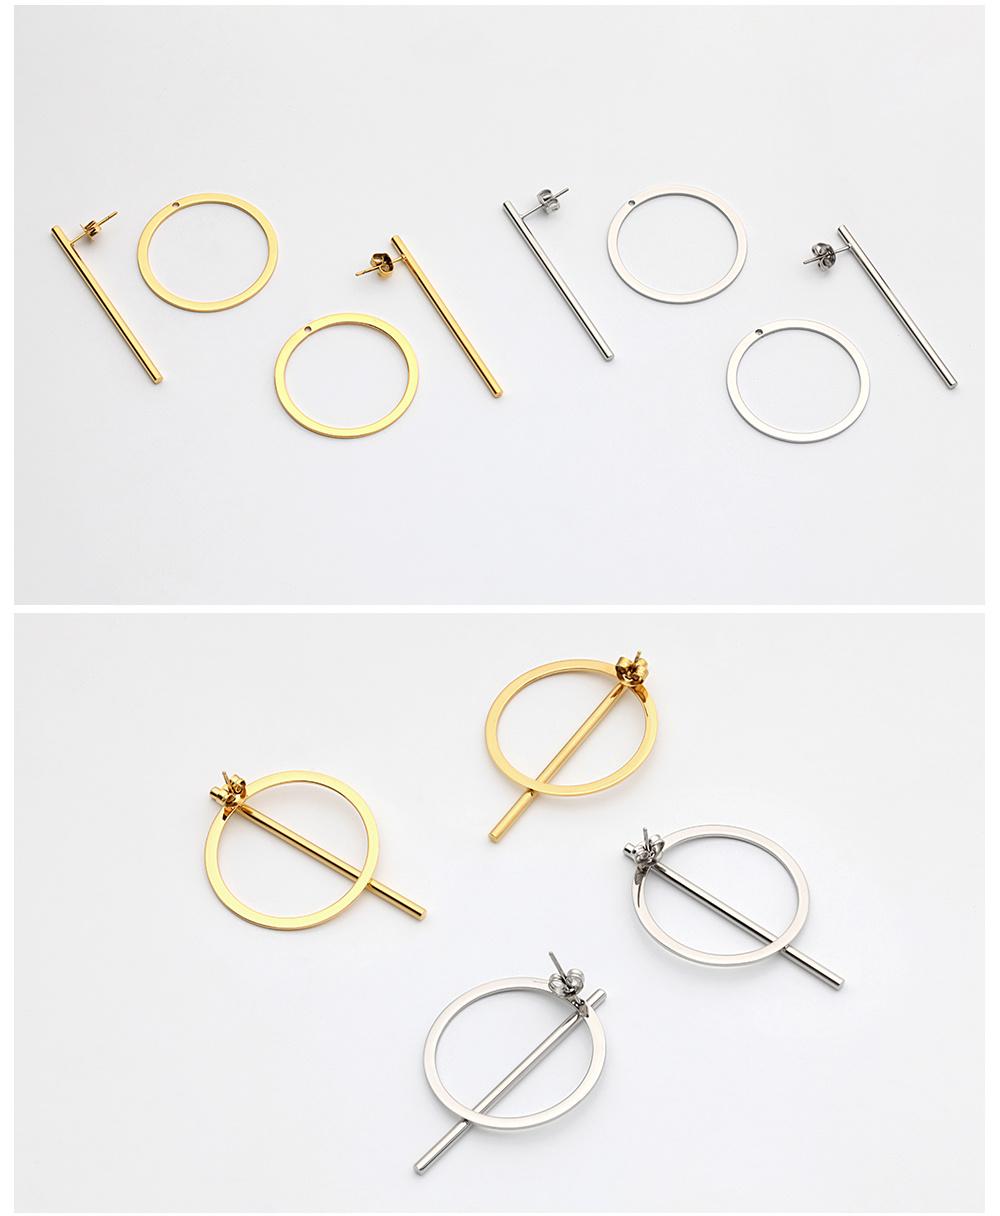 Elegant Huggie Hoop Earrings Girl Gold Color Long Earrings for Women Fashion Jewelry Wholesale